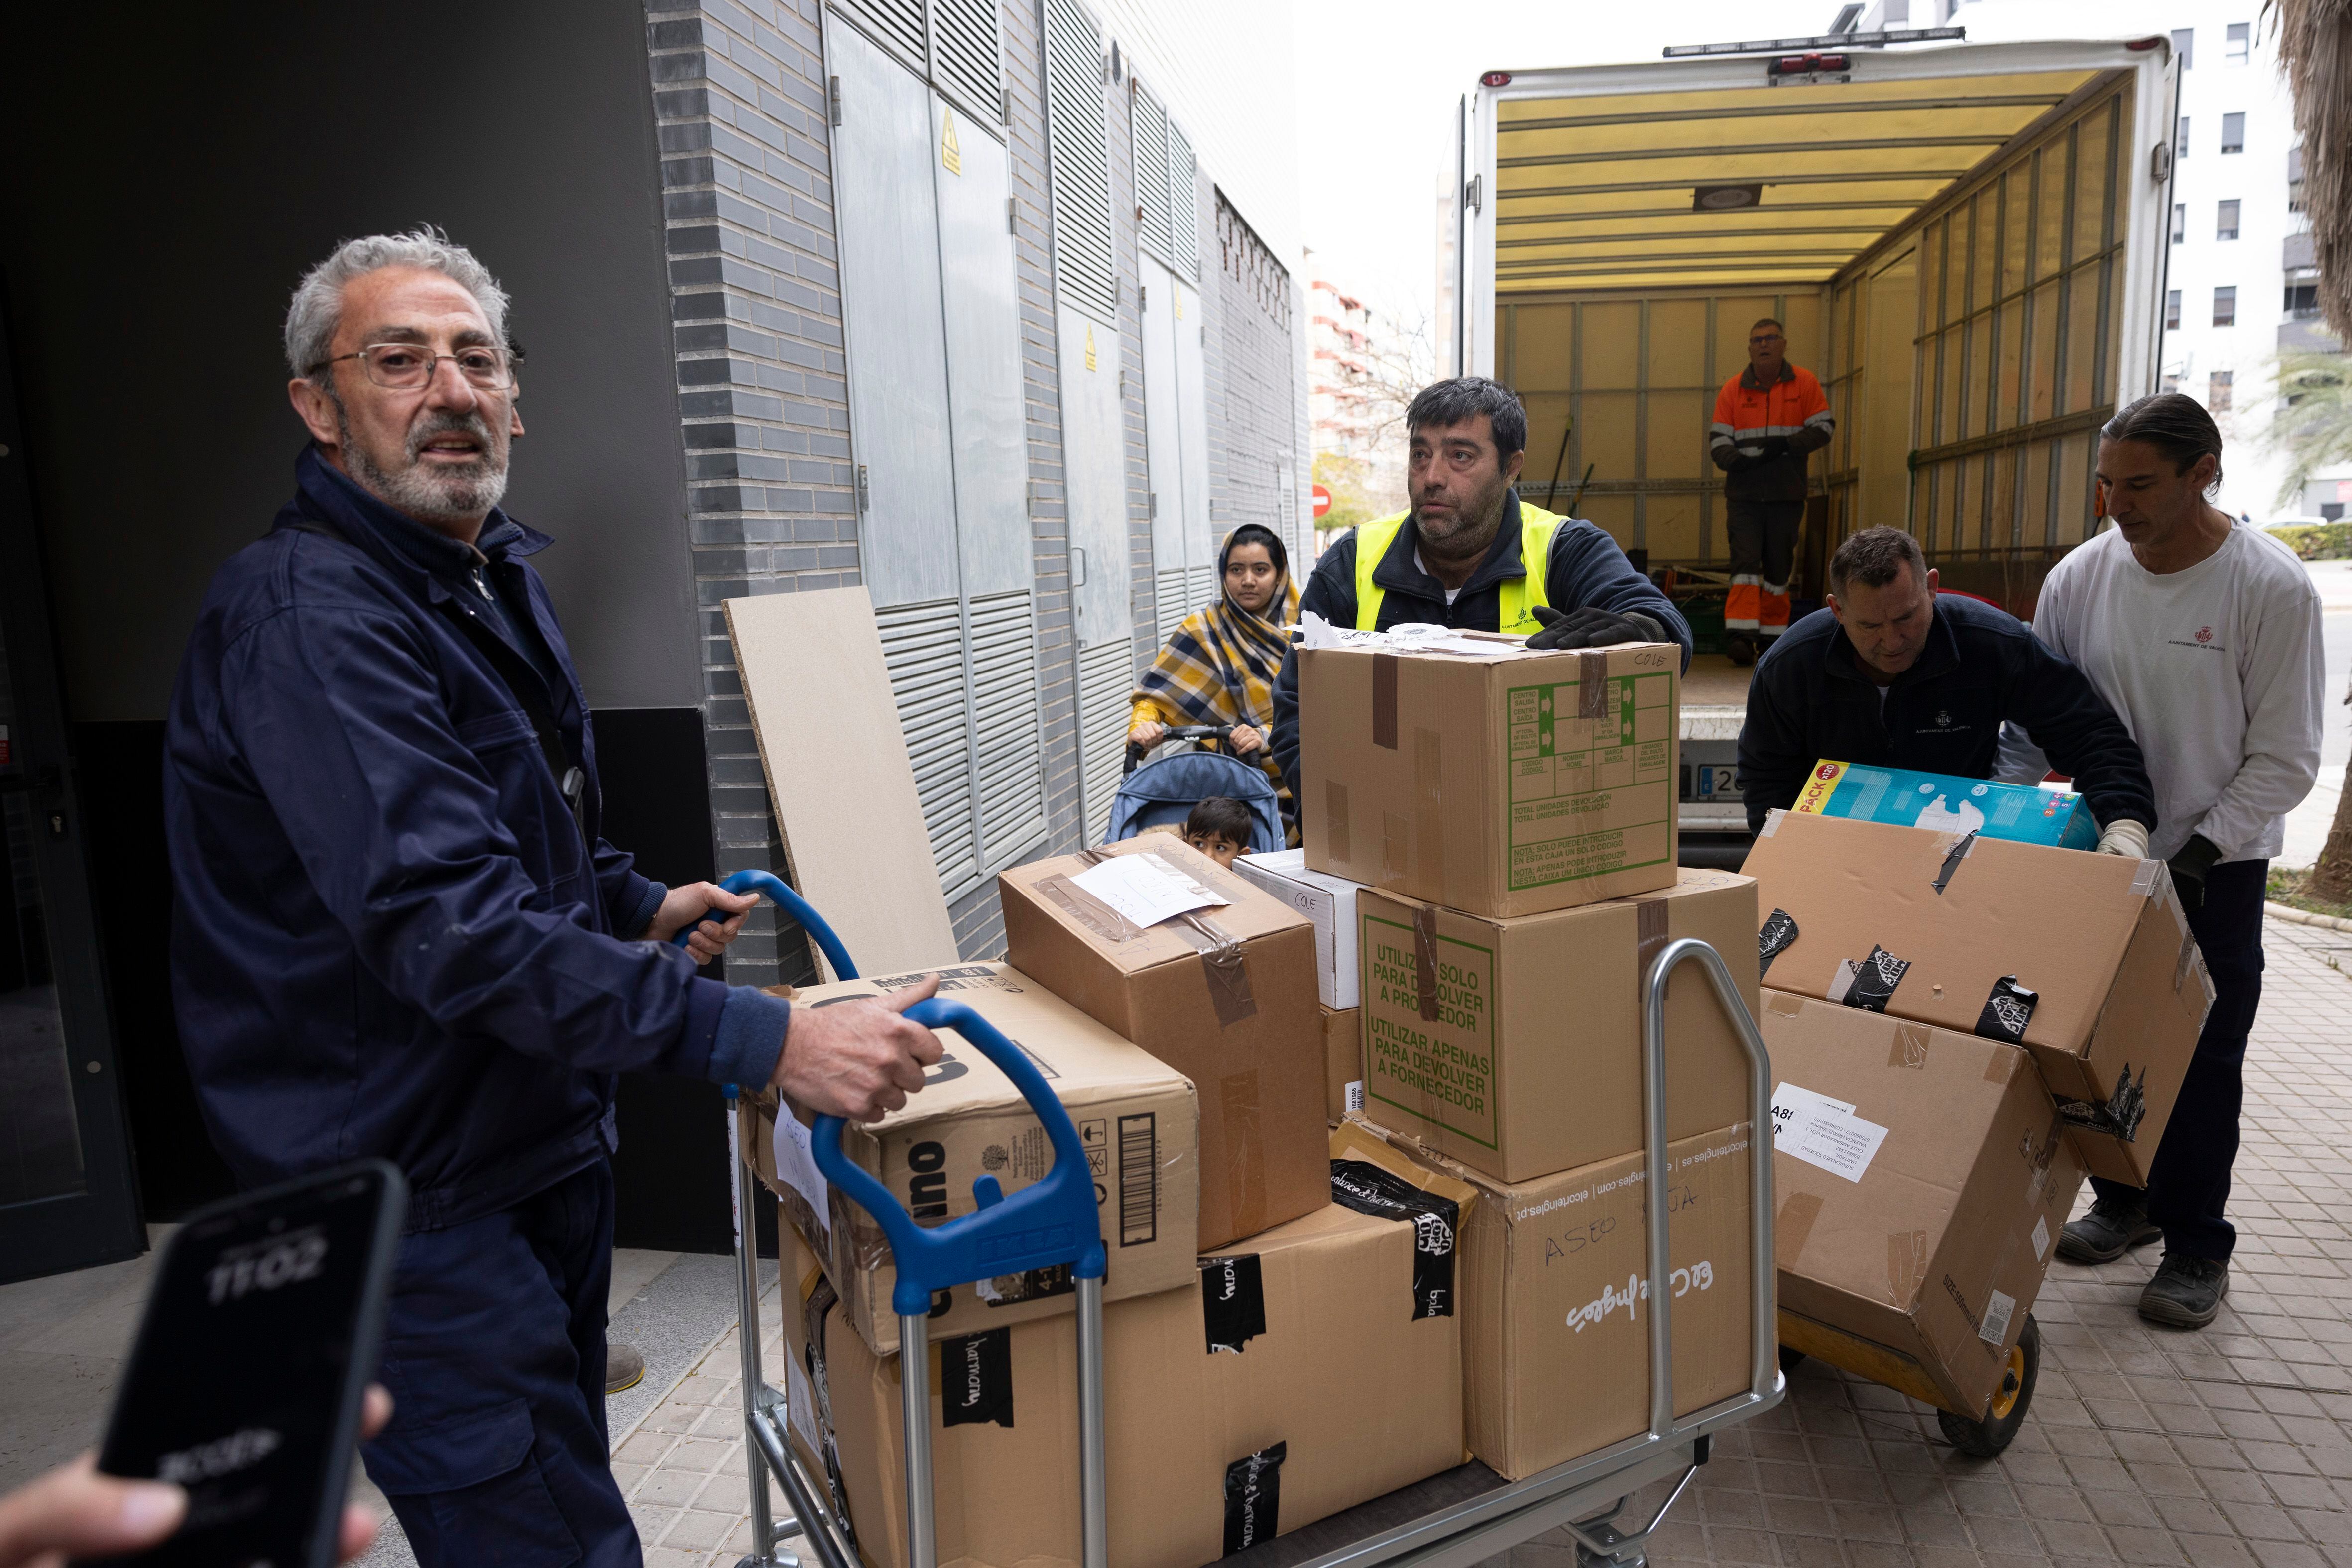 Operarios cargan cajas al interior del edificio donde se realojarán las familias afectadas por el incendio de Valencia, este lunes.